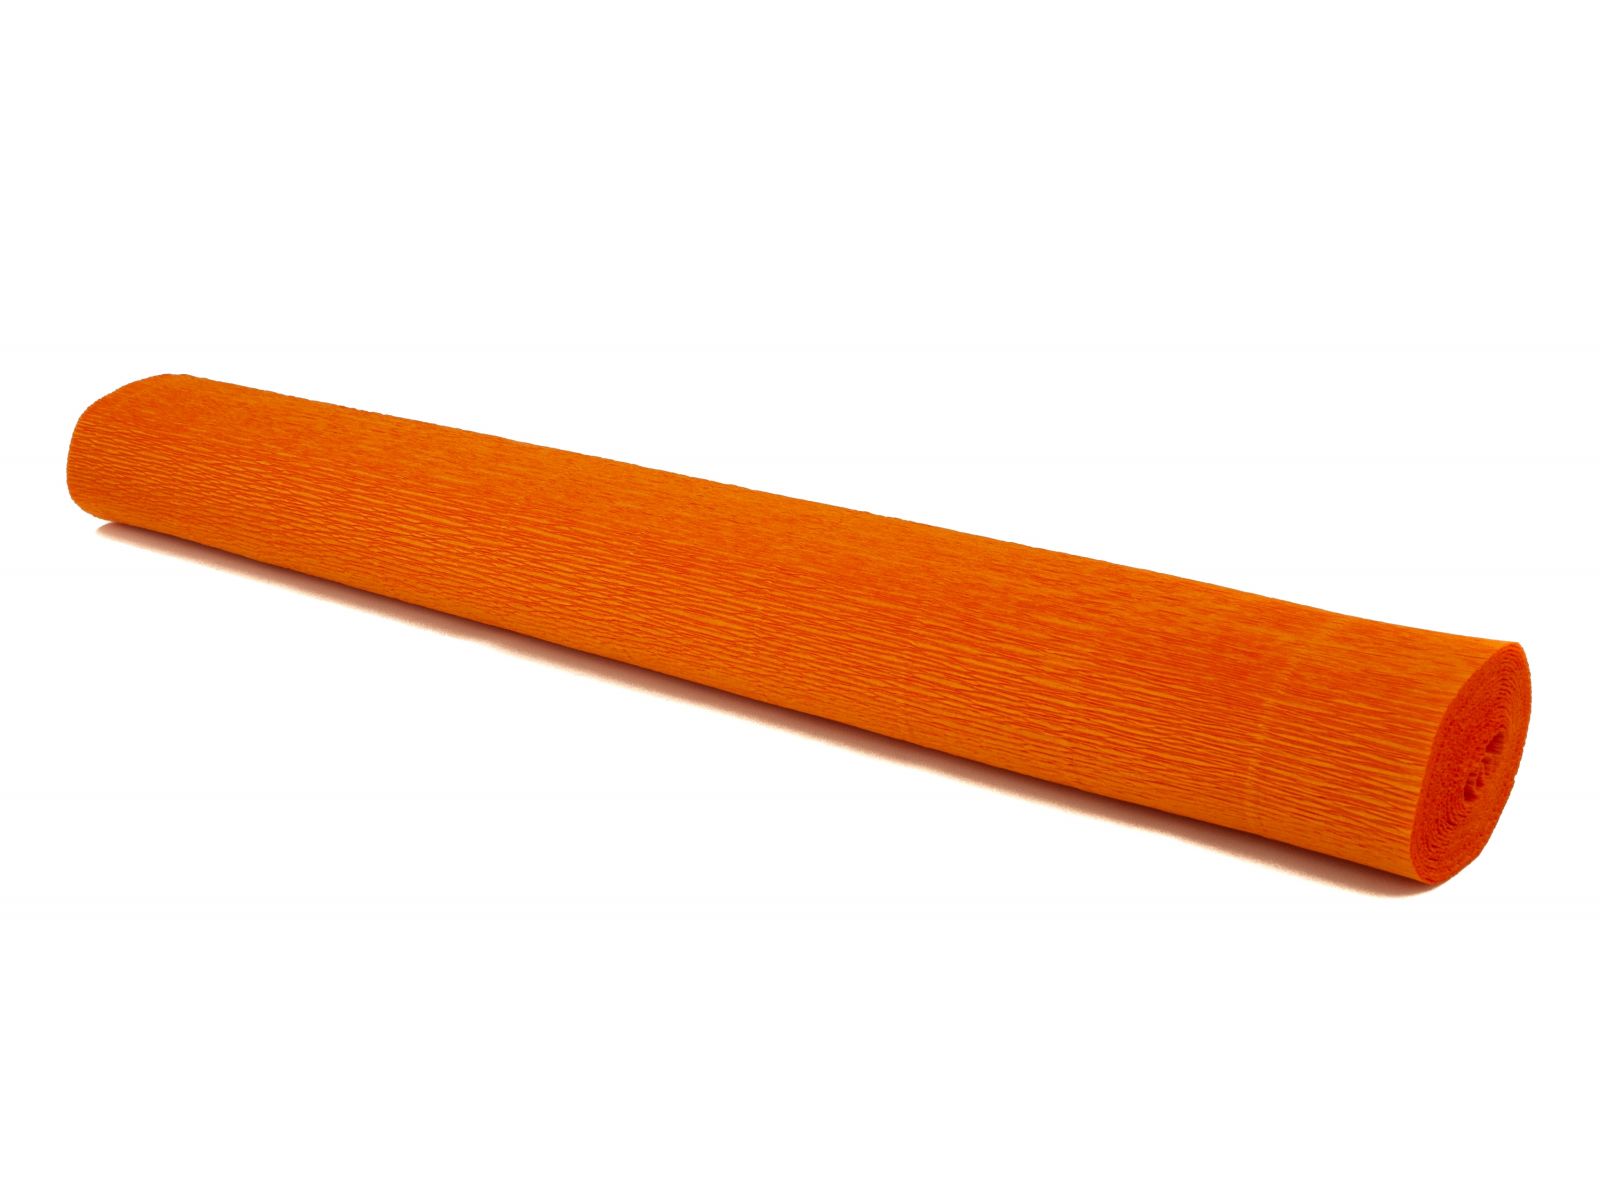 Krepový papír EXTRA pevný 180g, 50x200cm - k výrobě květů a jiné dekorace - Červený pomeranč